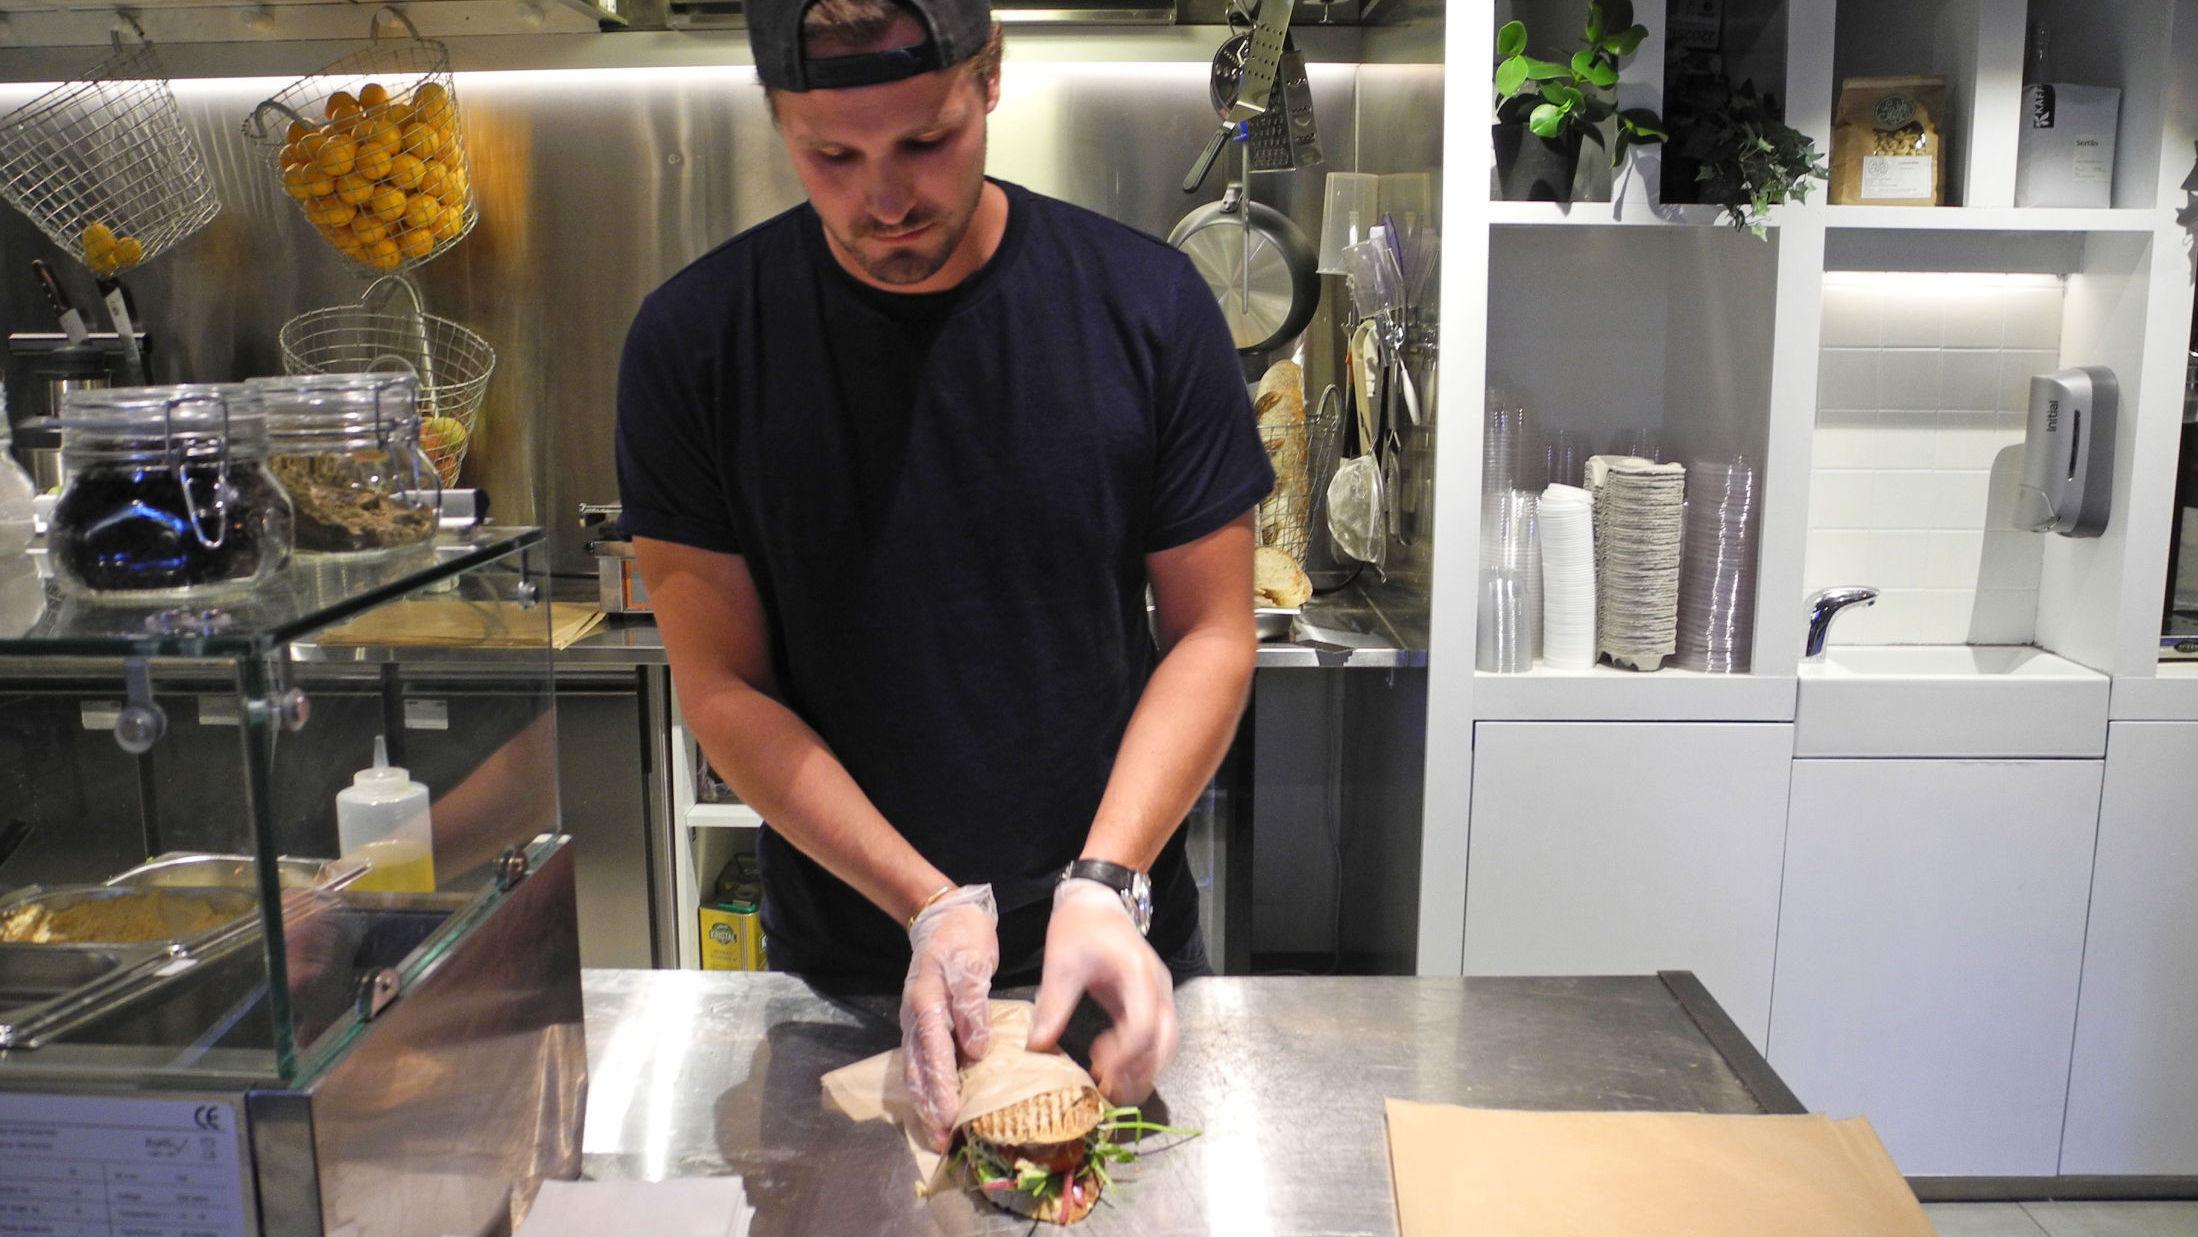 SMØRER PÅ: Eckers har blitt et svært populært lunsjsted med sine innholdsrike sandwicher. Foto: Godt.no